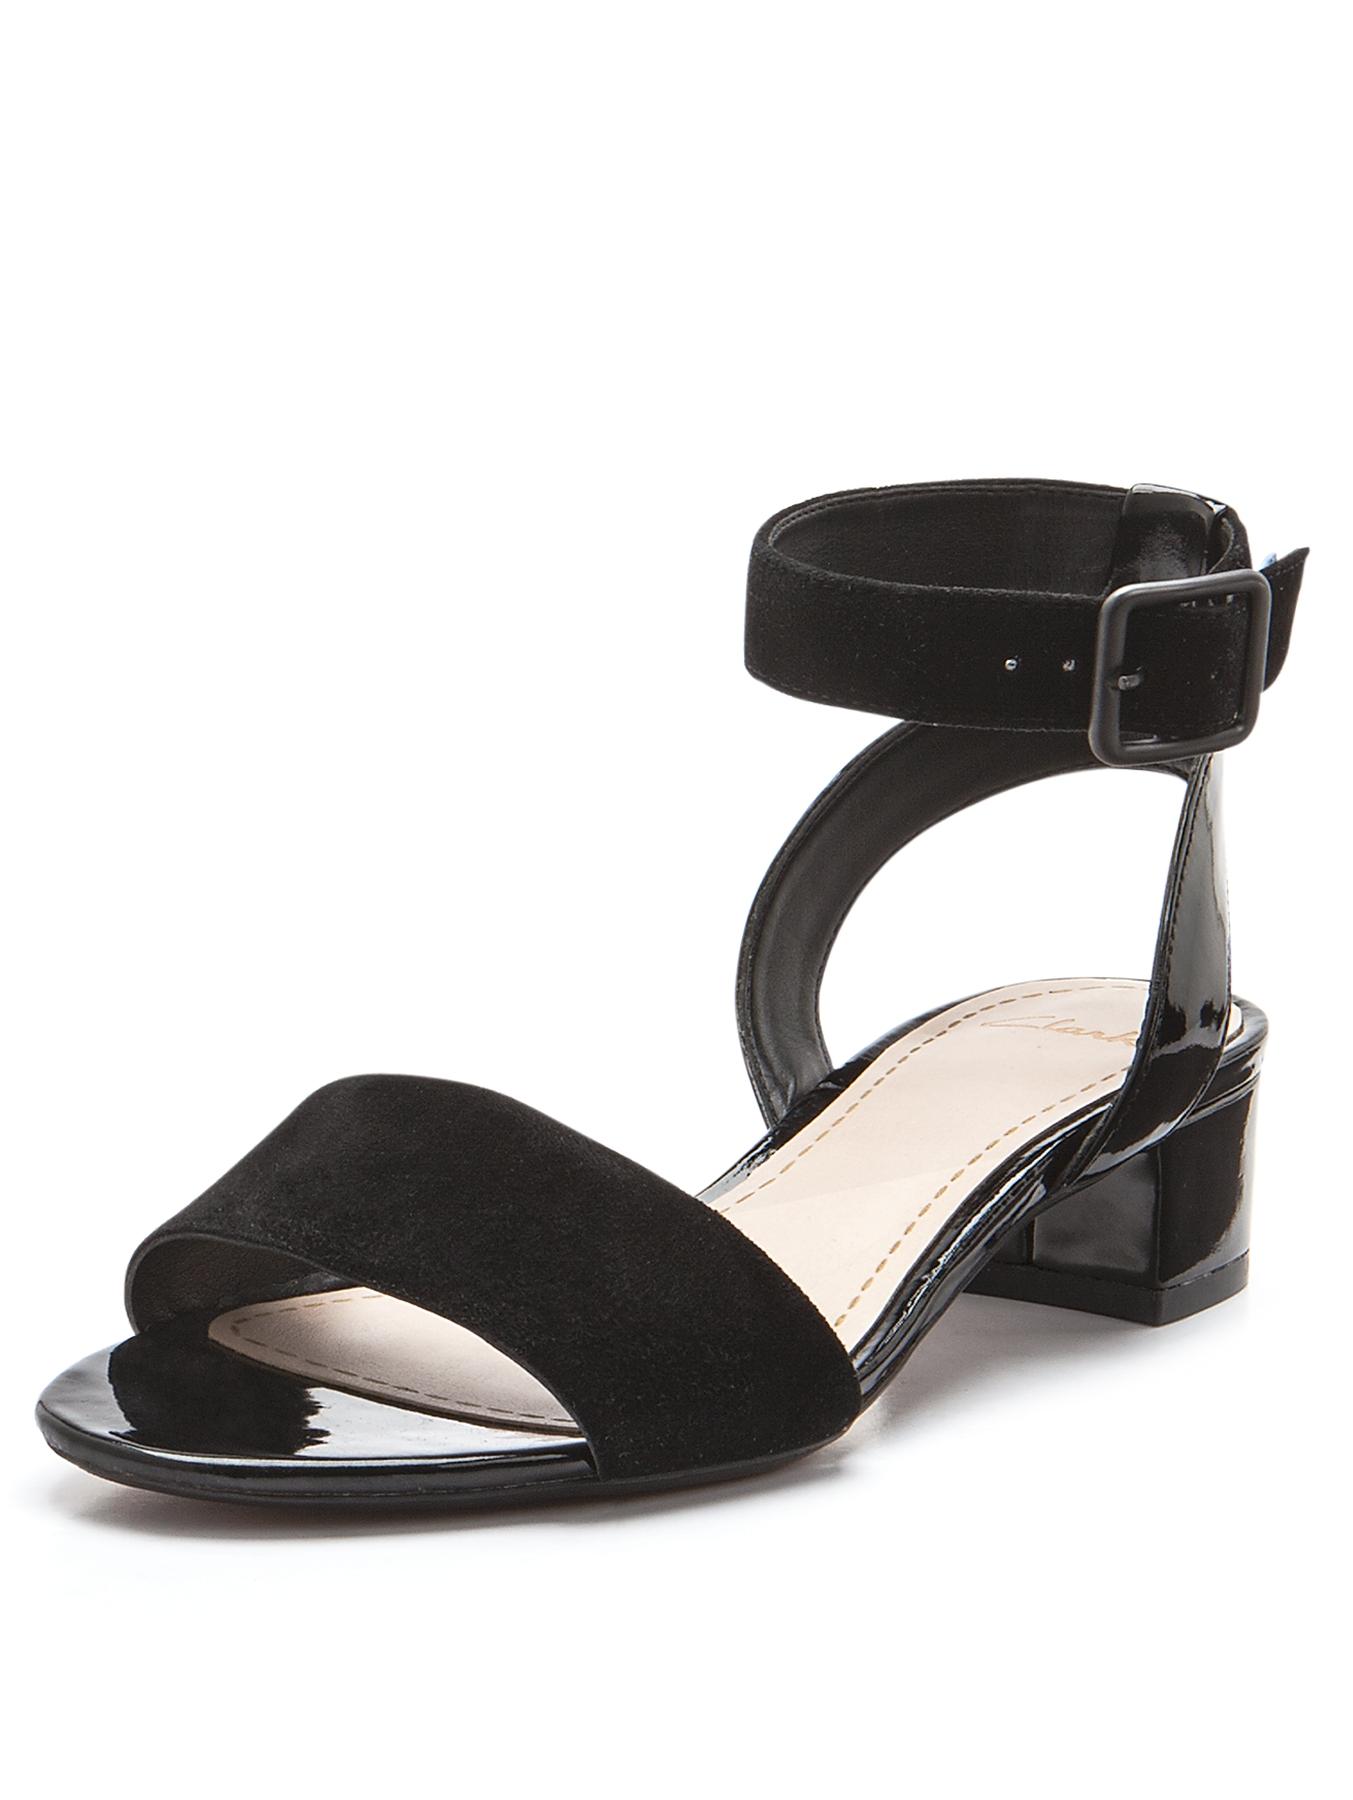 Ladies Sandals |Sandals & Flip Flops | Very.co.uk